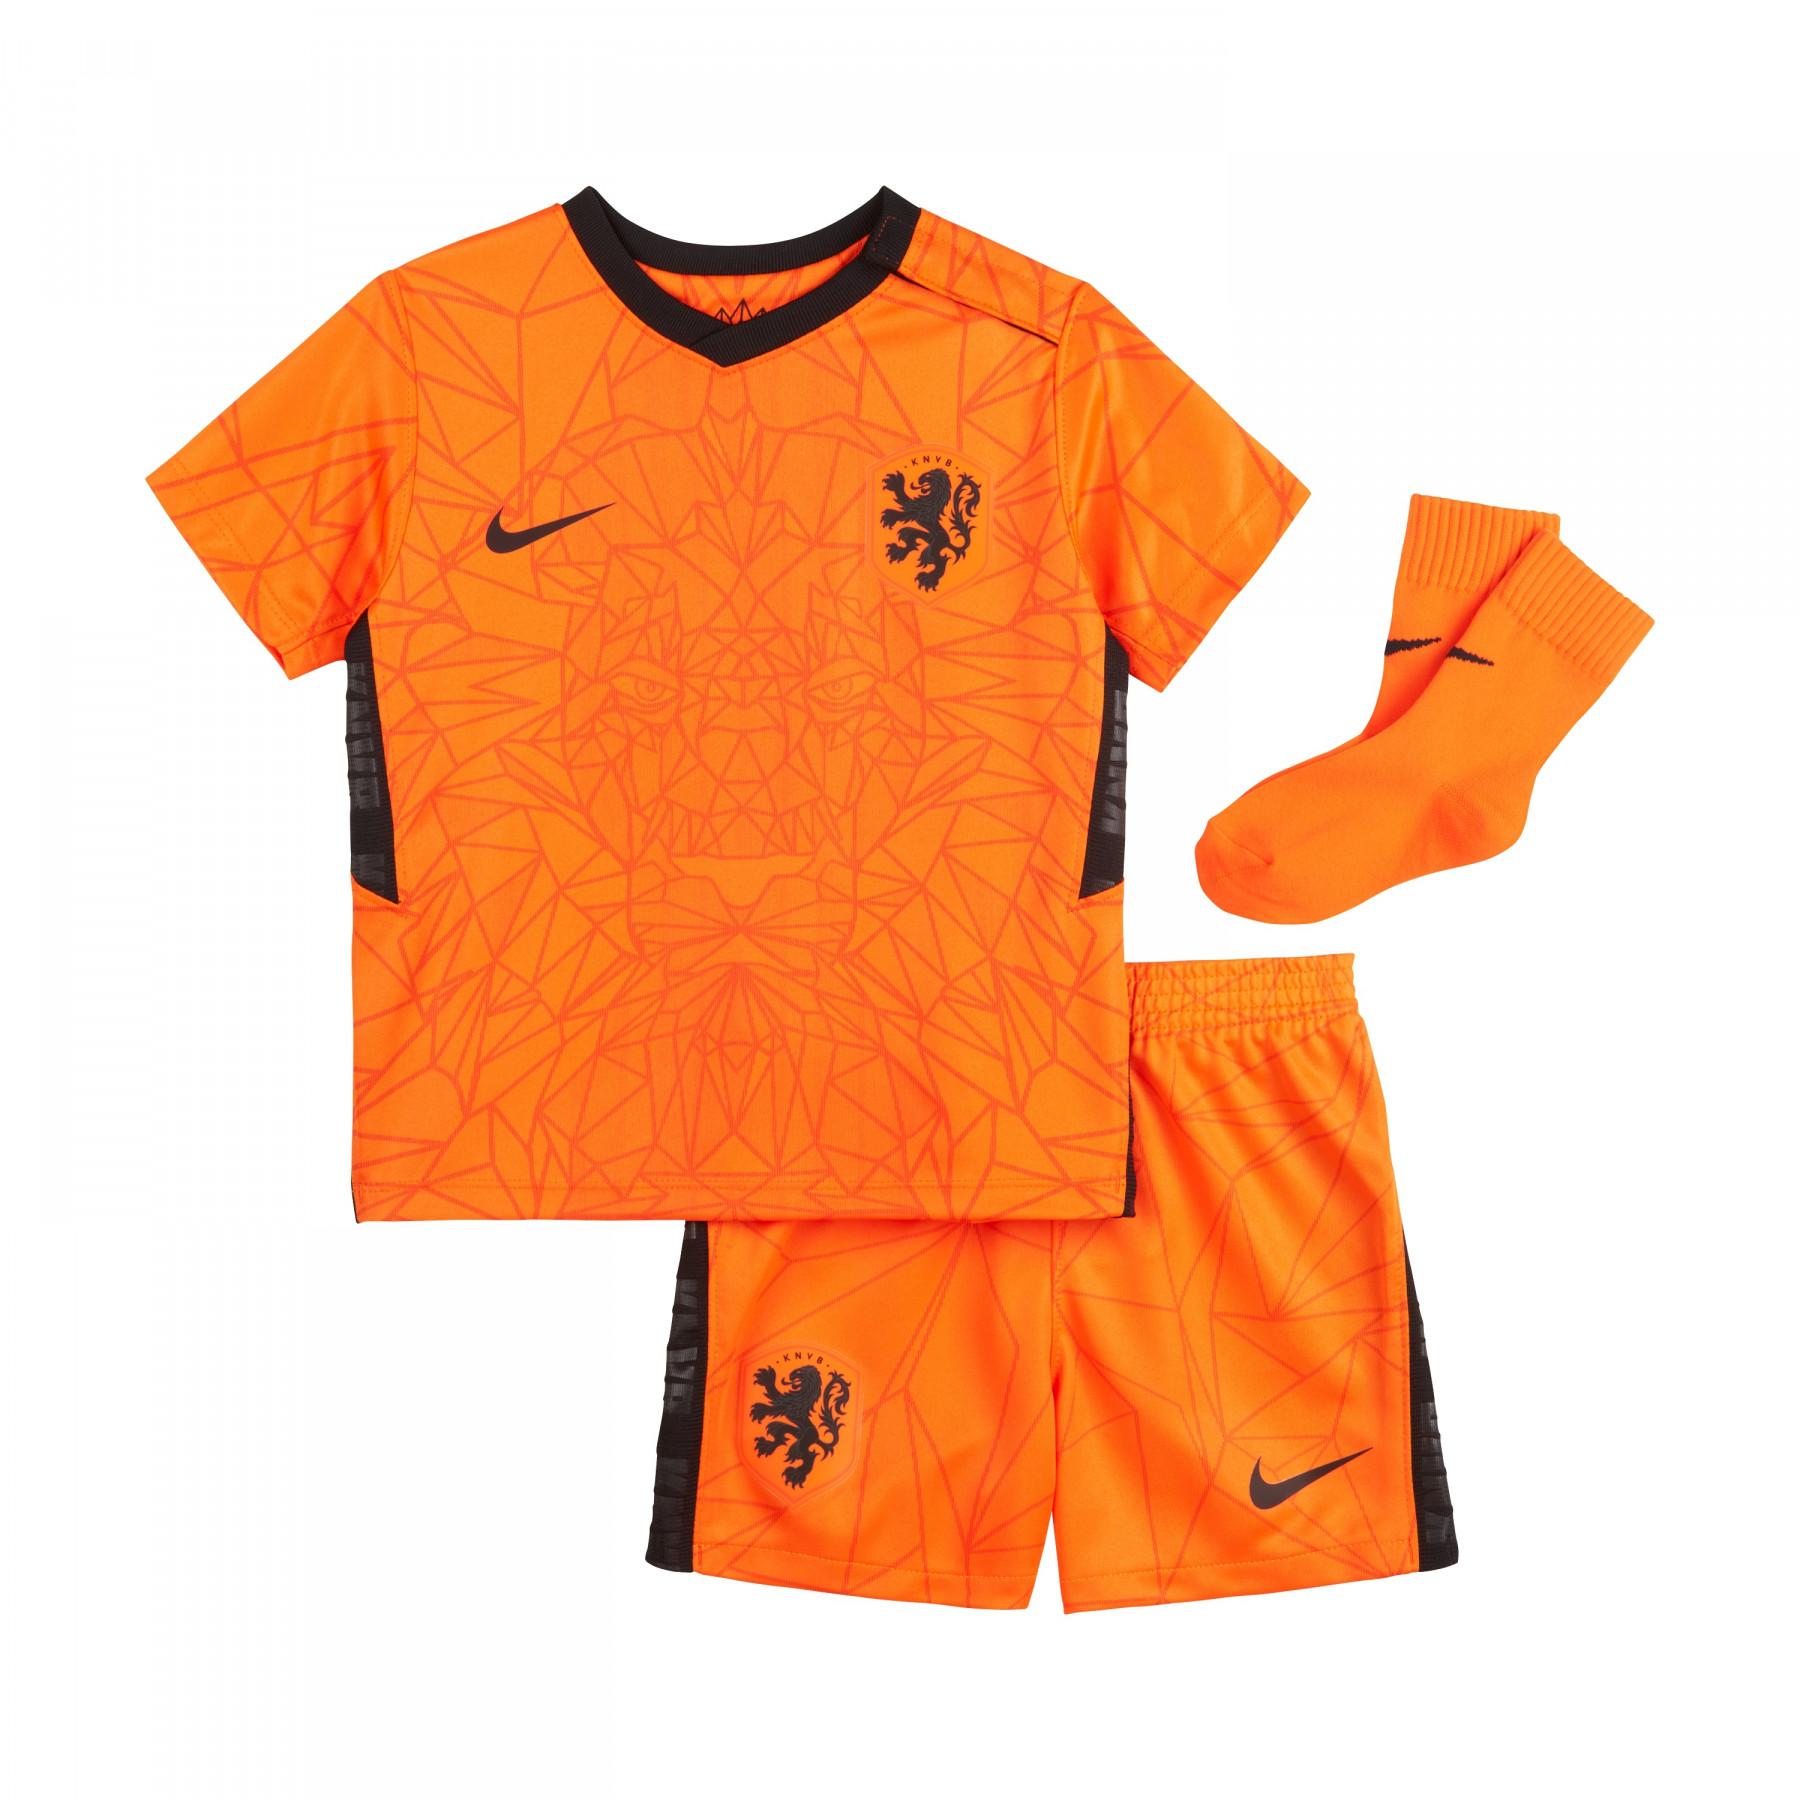 Hem mini-kit Pays-Bas 2020